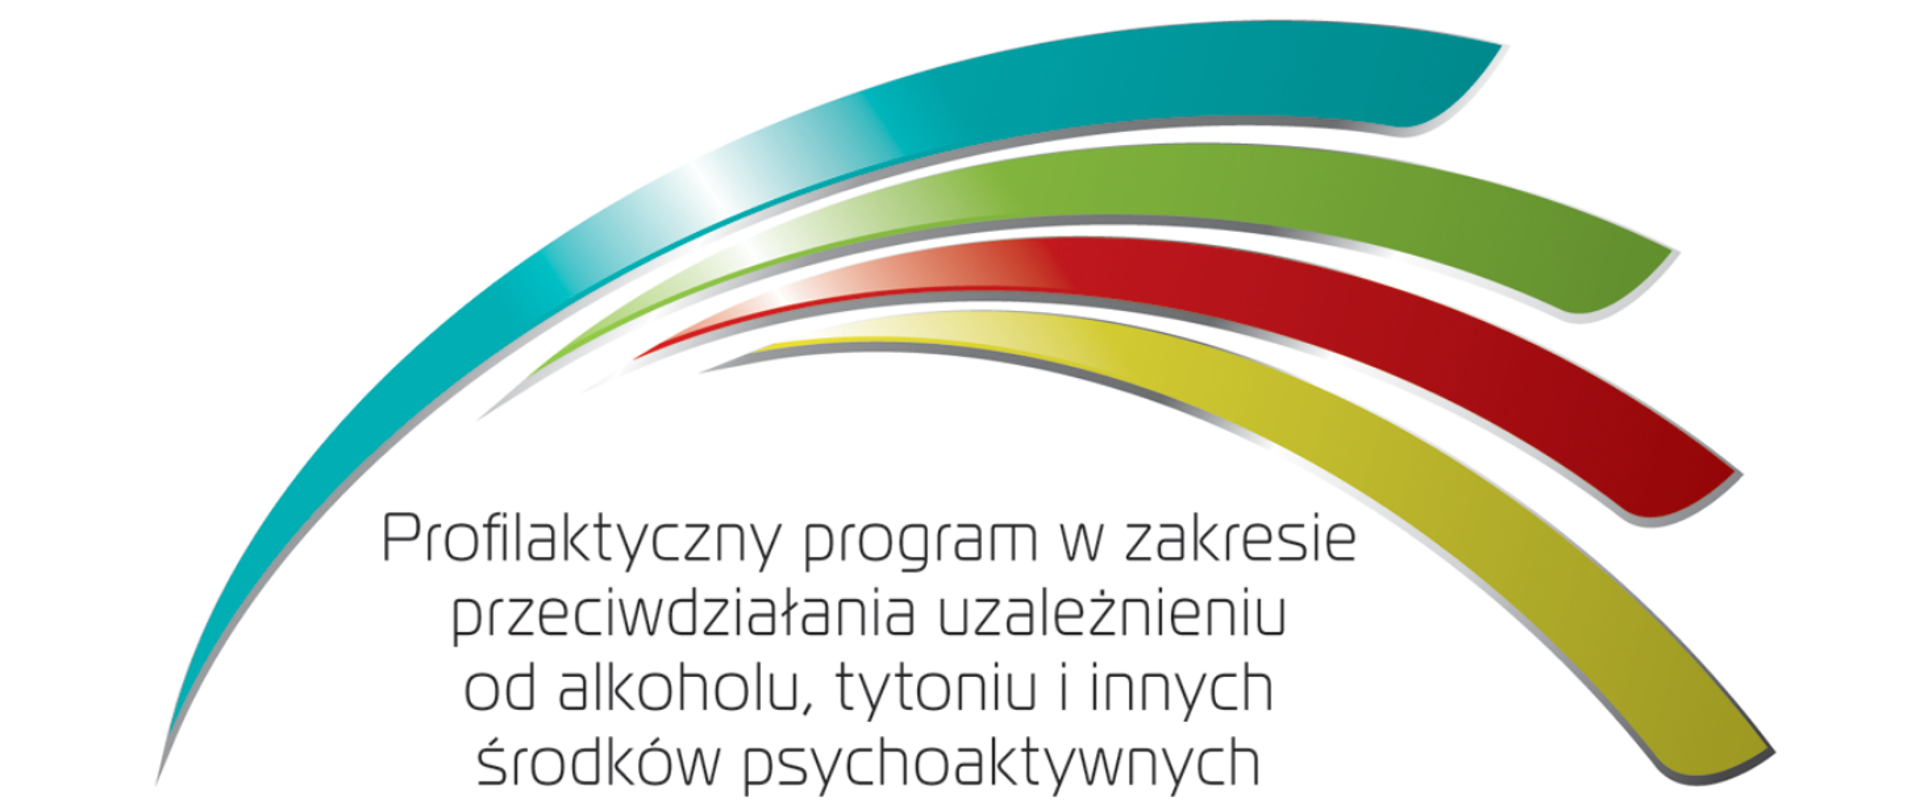 Logo projektu (cztery kolorowe półokrągłe linie) Profilaktyczny program w zakresie przeciwdziałania uzależnieniu od alkoholu, tytoniu i innych środków psychoaktywnych